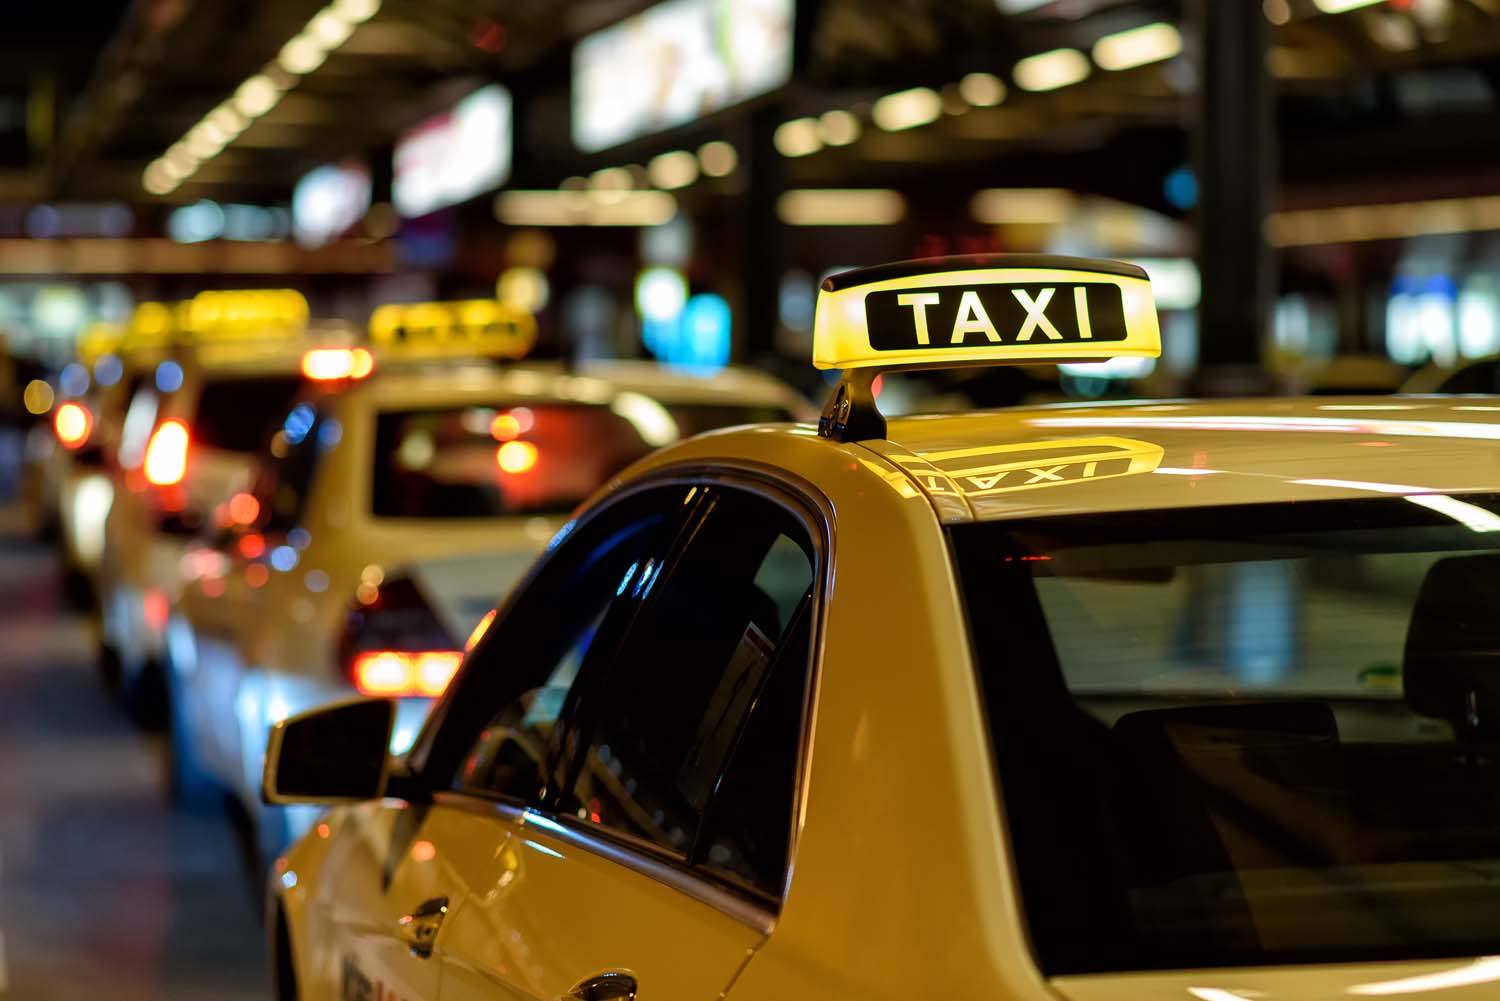 Brauchen wir in der Zukunft noch Taxis?